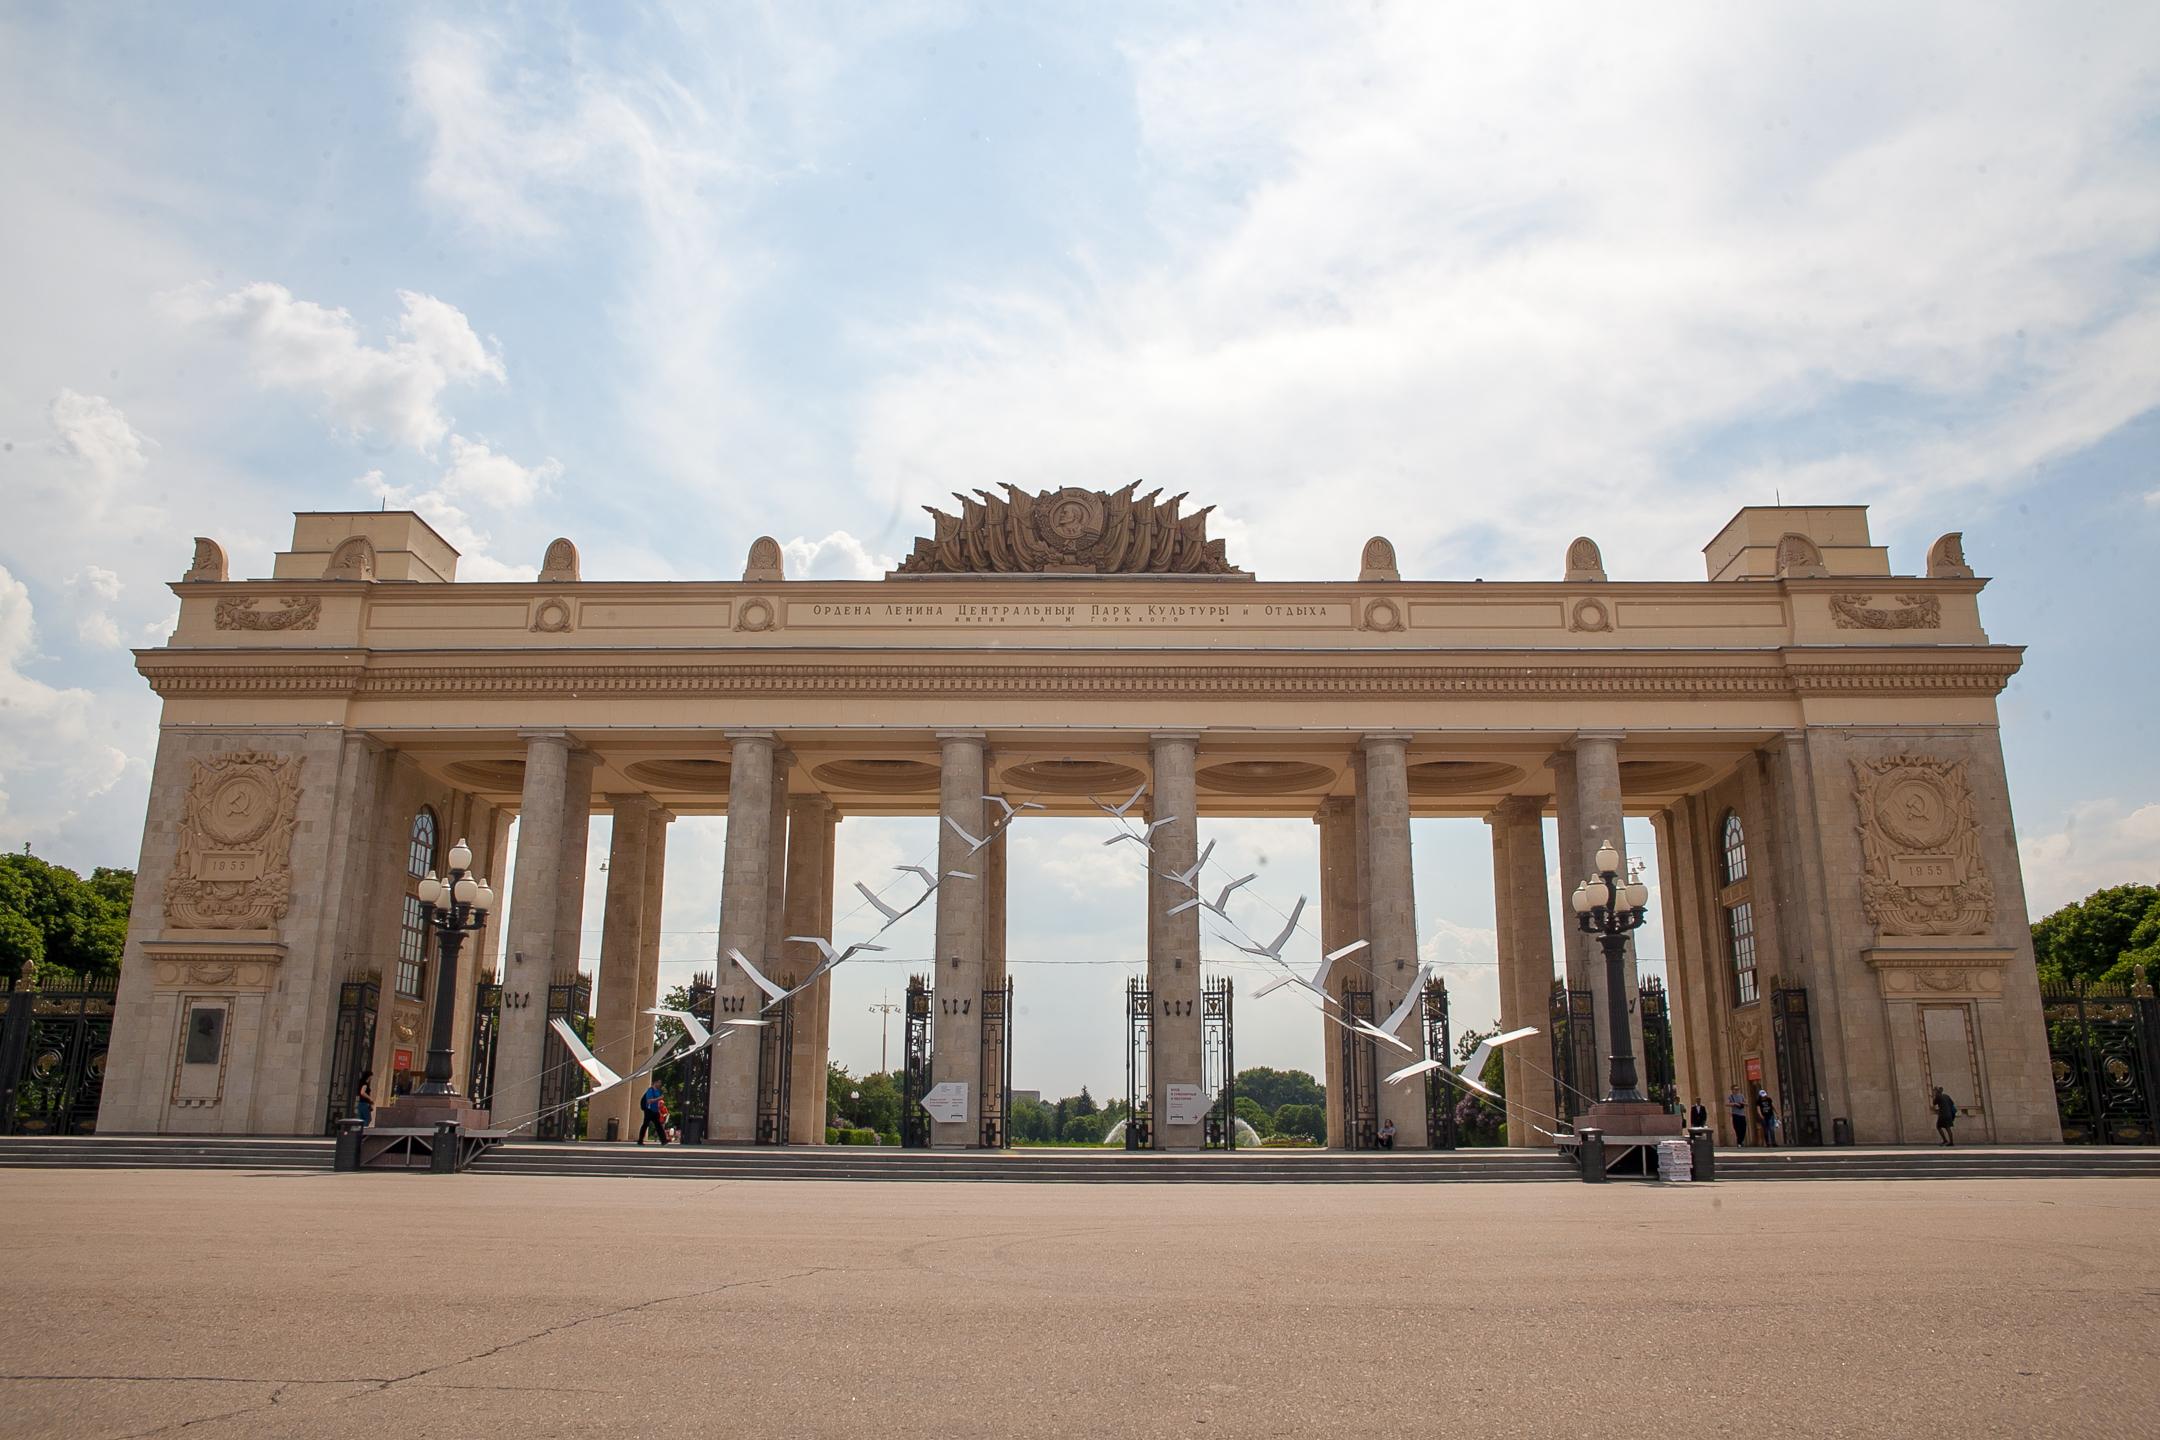 Музей парка Горького располагается в арке Главного входа